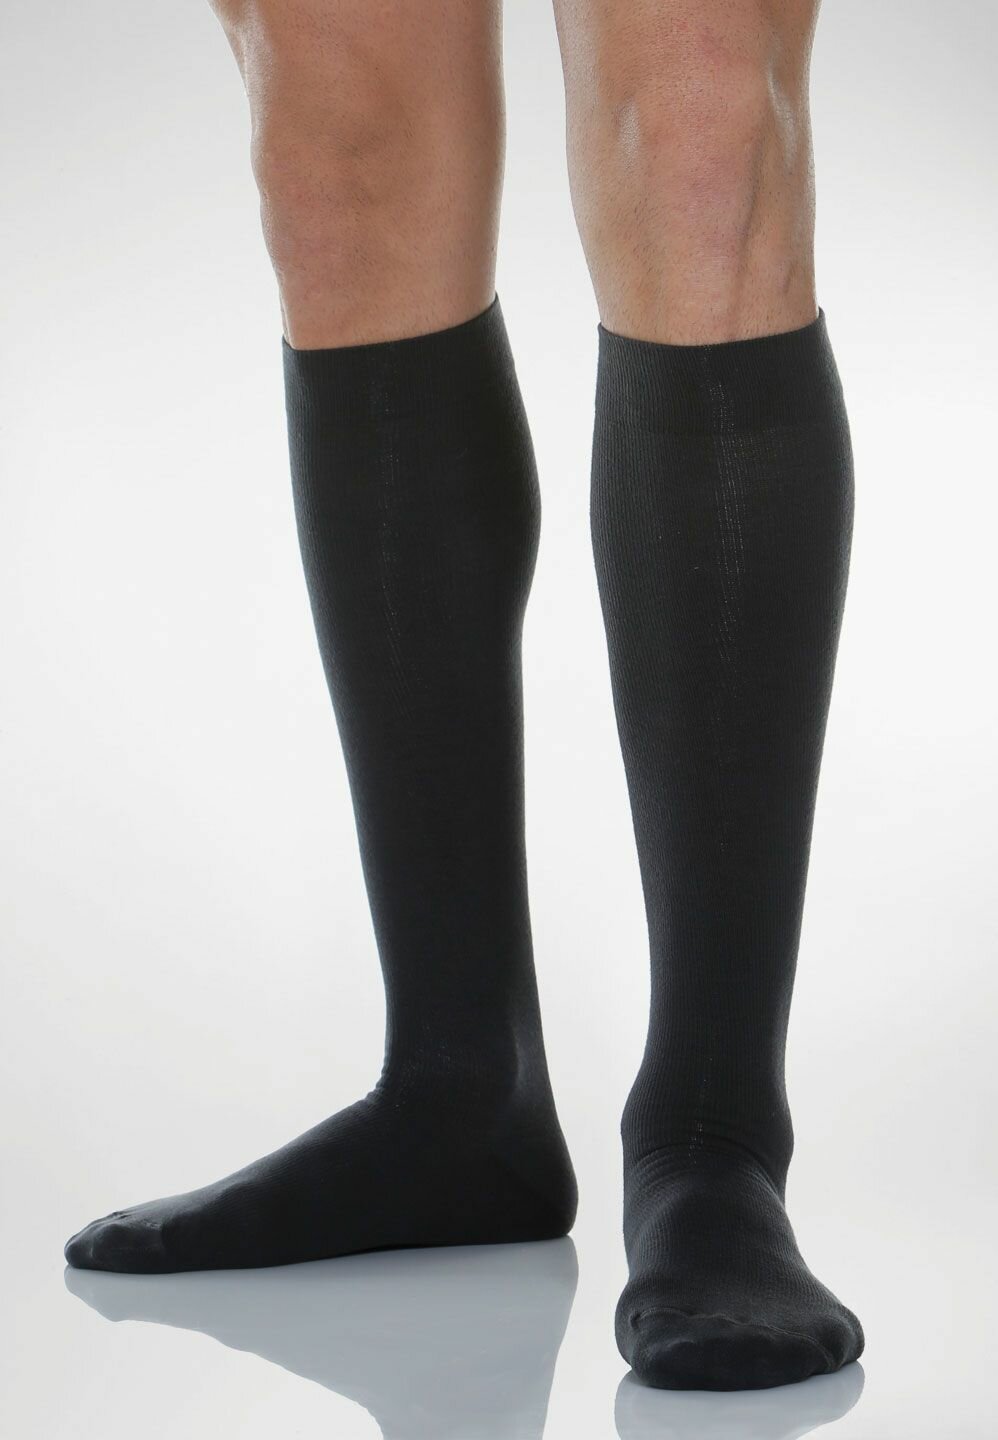 Гольфы Relaxsan Cotton Socks унисекс с хлопком, 1 класс компрессии, размер 6, черный